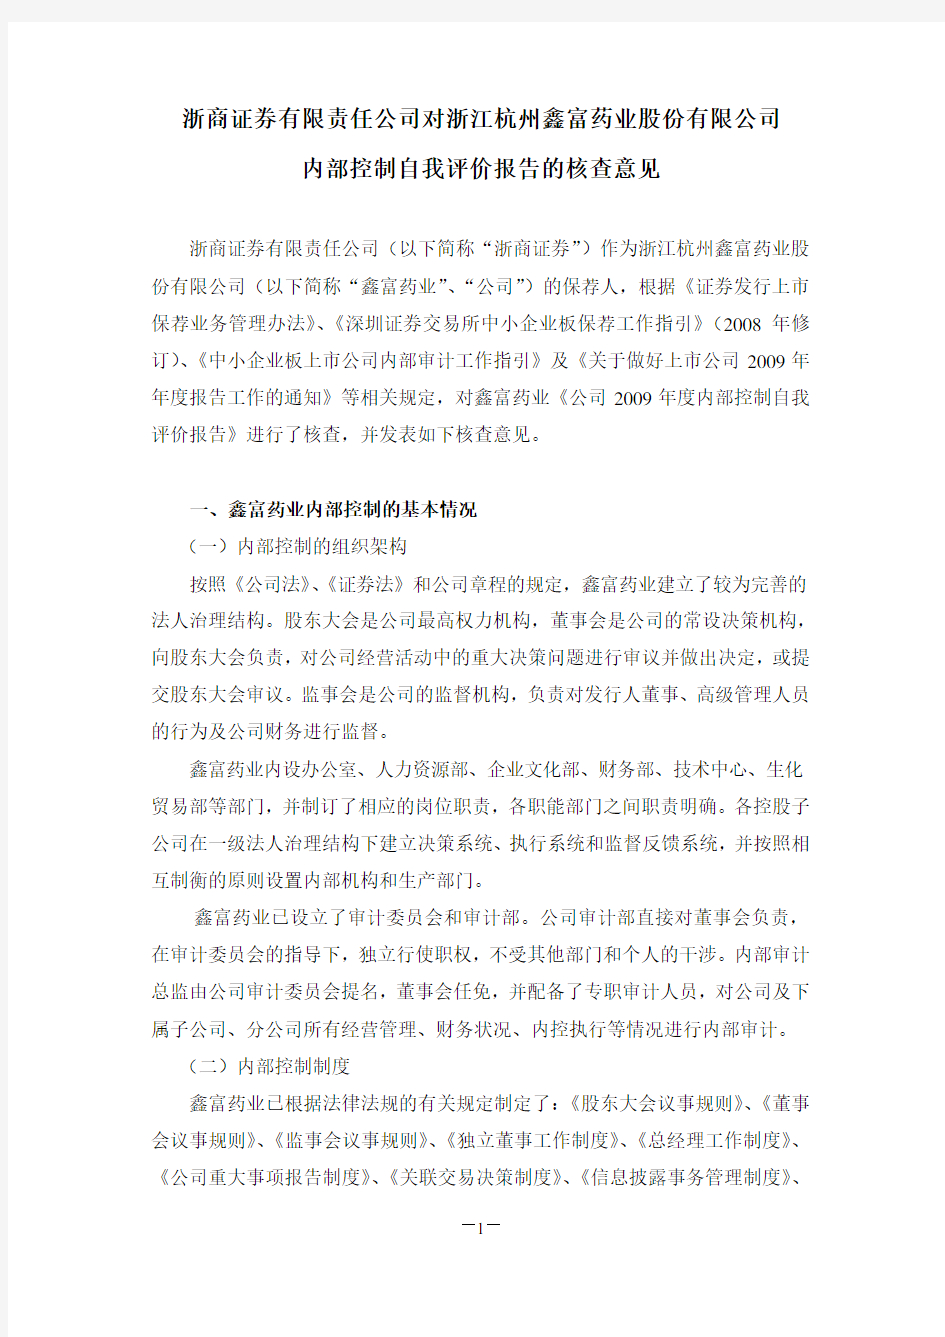 浙商证券有限责任公司对浙江杭州鑫富药业股份有限公司内部控制自我评价报告的核查意见